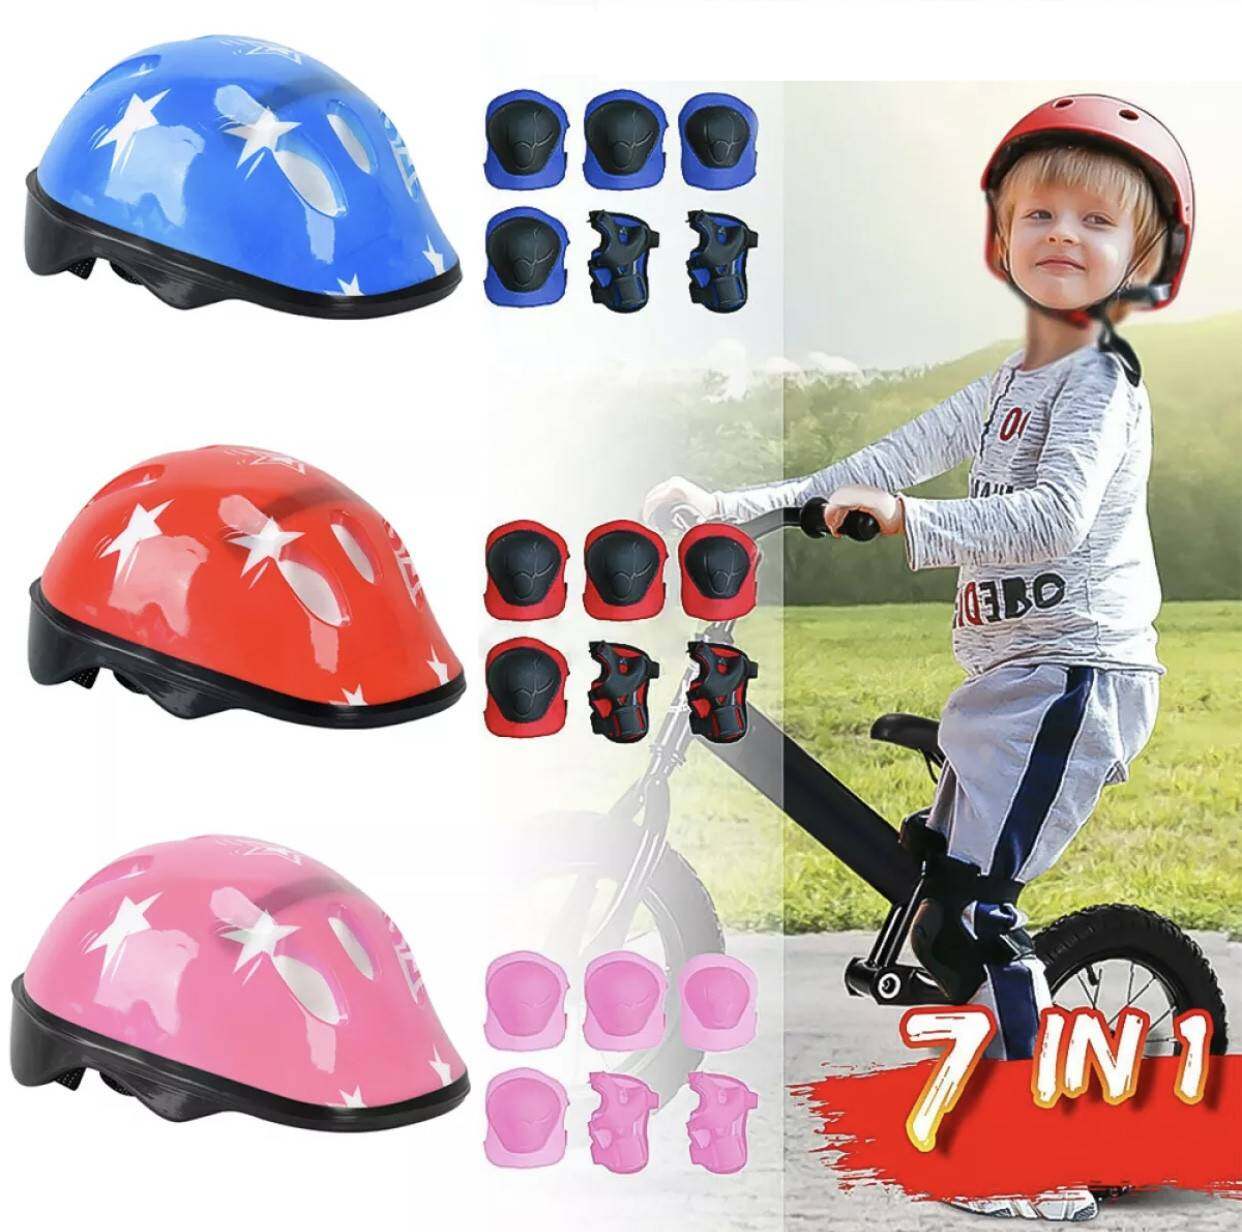 อุปกรณ์ป้องกันเด็ก ชุดป้องกันเด็ก (7ชิ้น/เซ็ต) เล่นสเก็ต ขี่จักรยาน เล่นสเก็ตบอร์ด (สนับเข่า+ข้อศอก+ข้อมือ+หมวกกันน็อค) รุ่นA